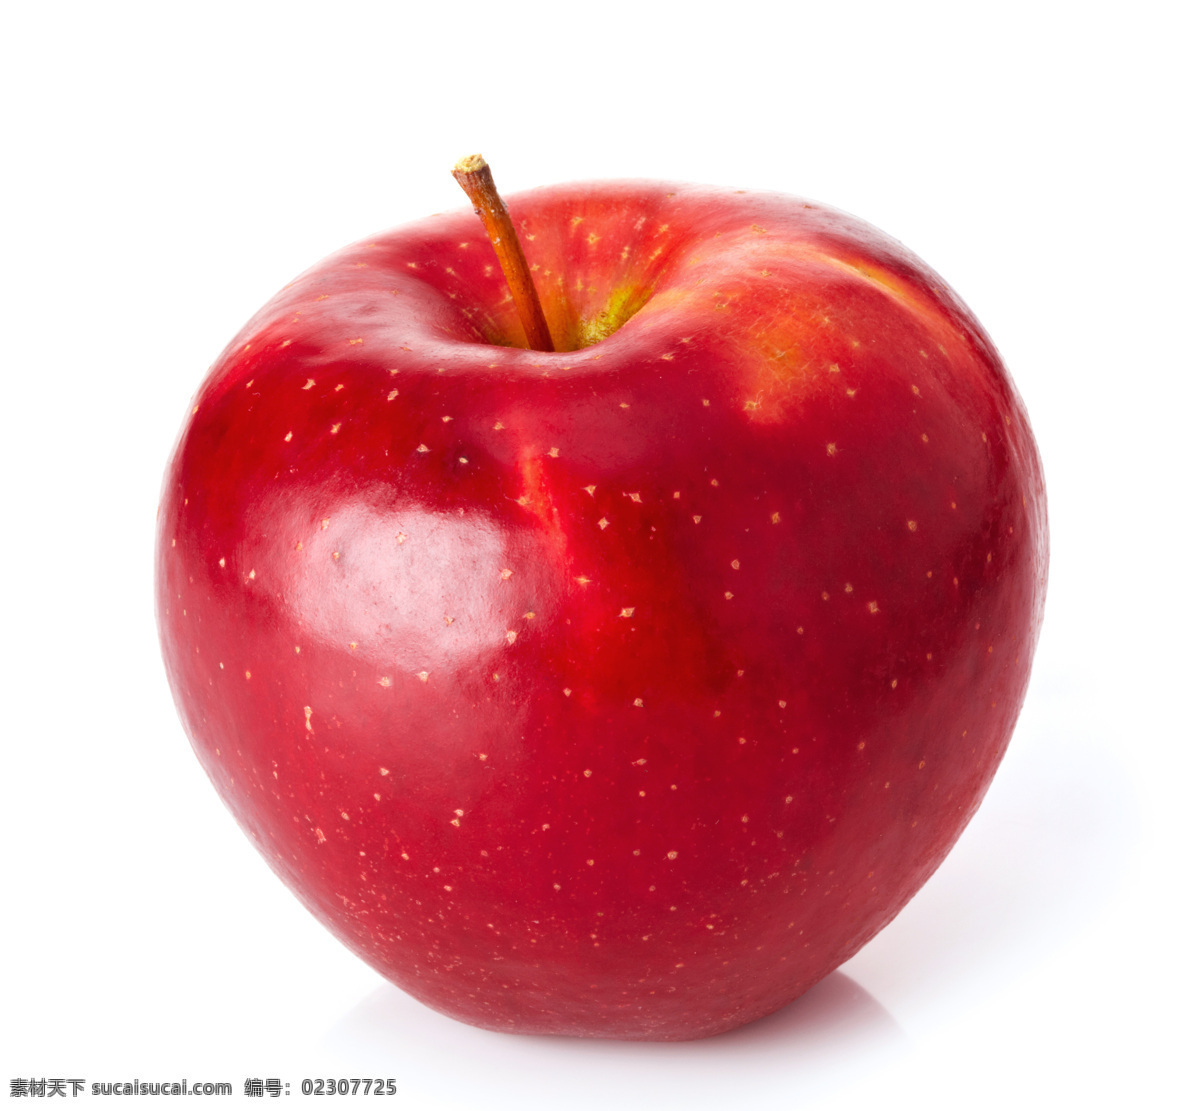 诱人 红苹果 苹果 大苹果 水果 红色 红色元素 其他类别 生活百科